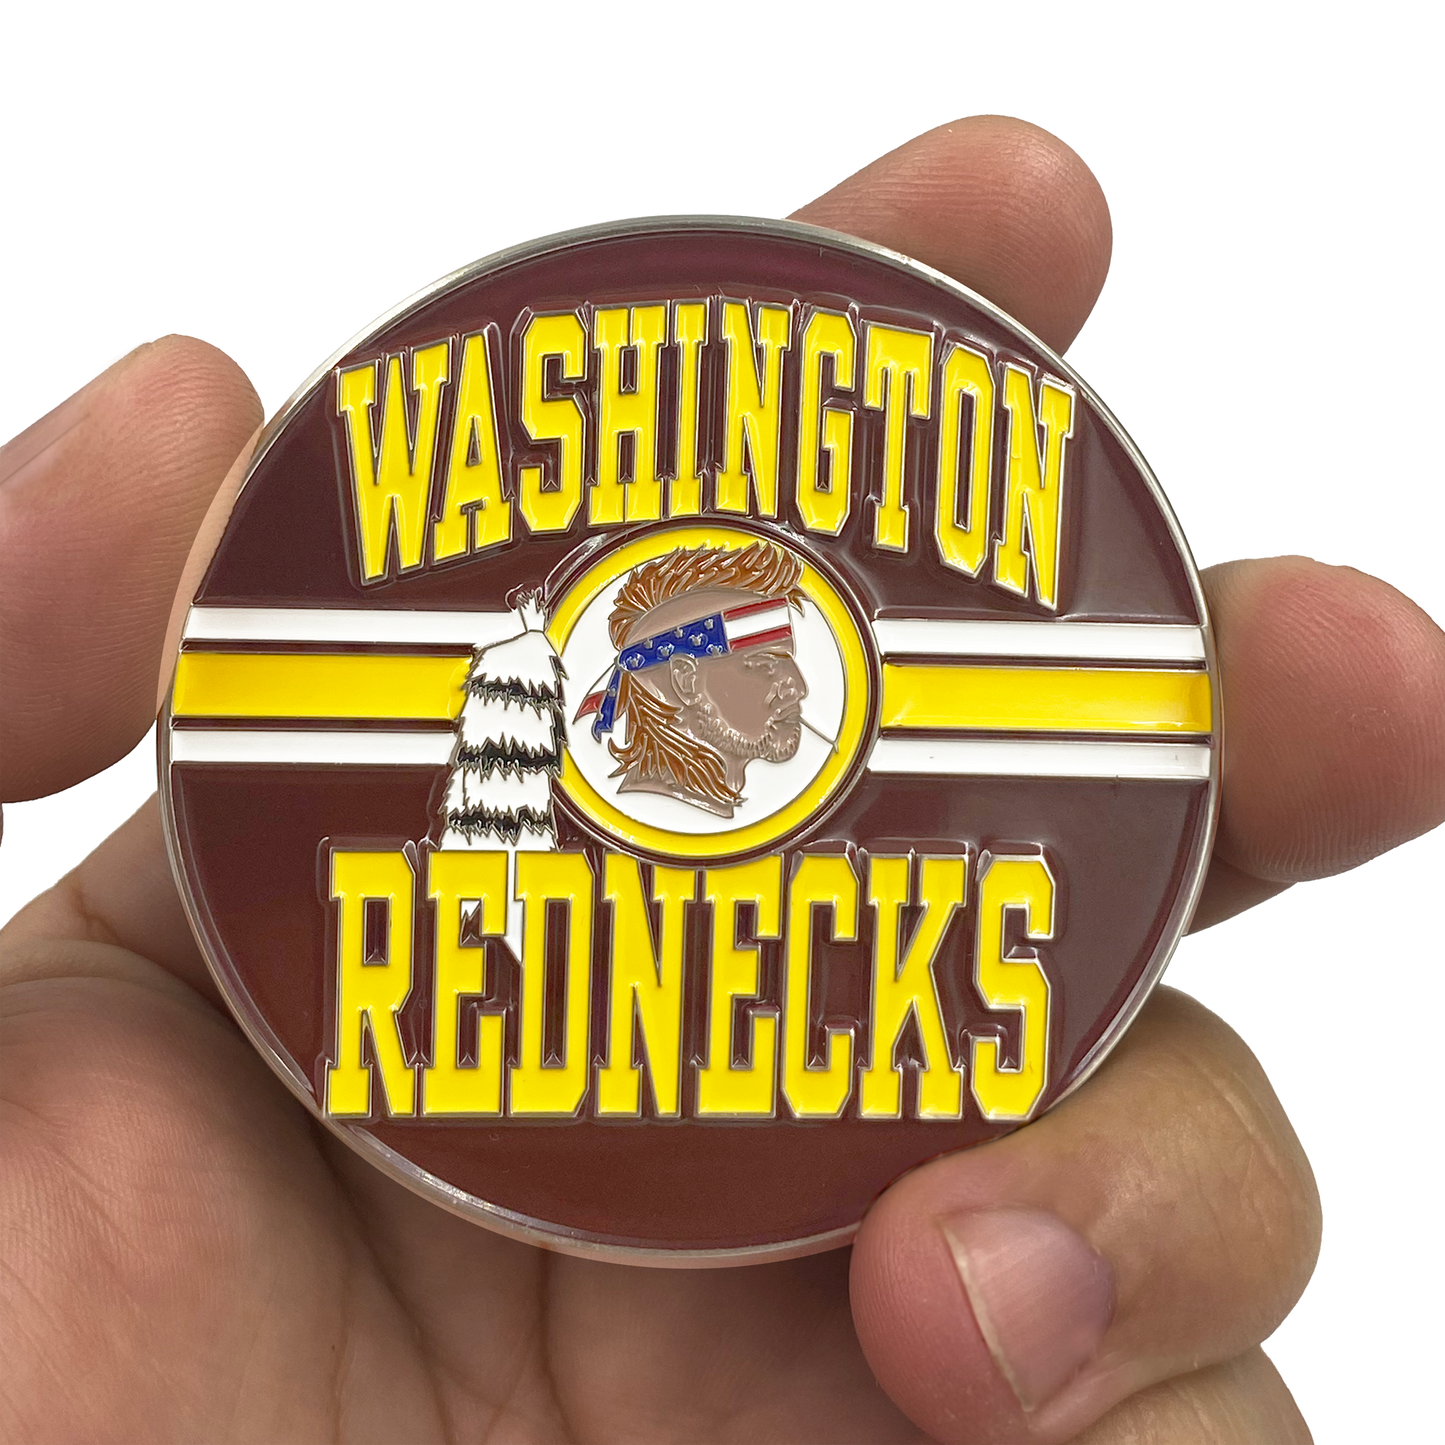 DL8-01 Washington Rednecks WE ONLY KNEEL FOR JESUS Challenge Coin